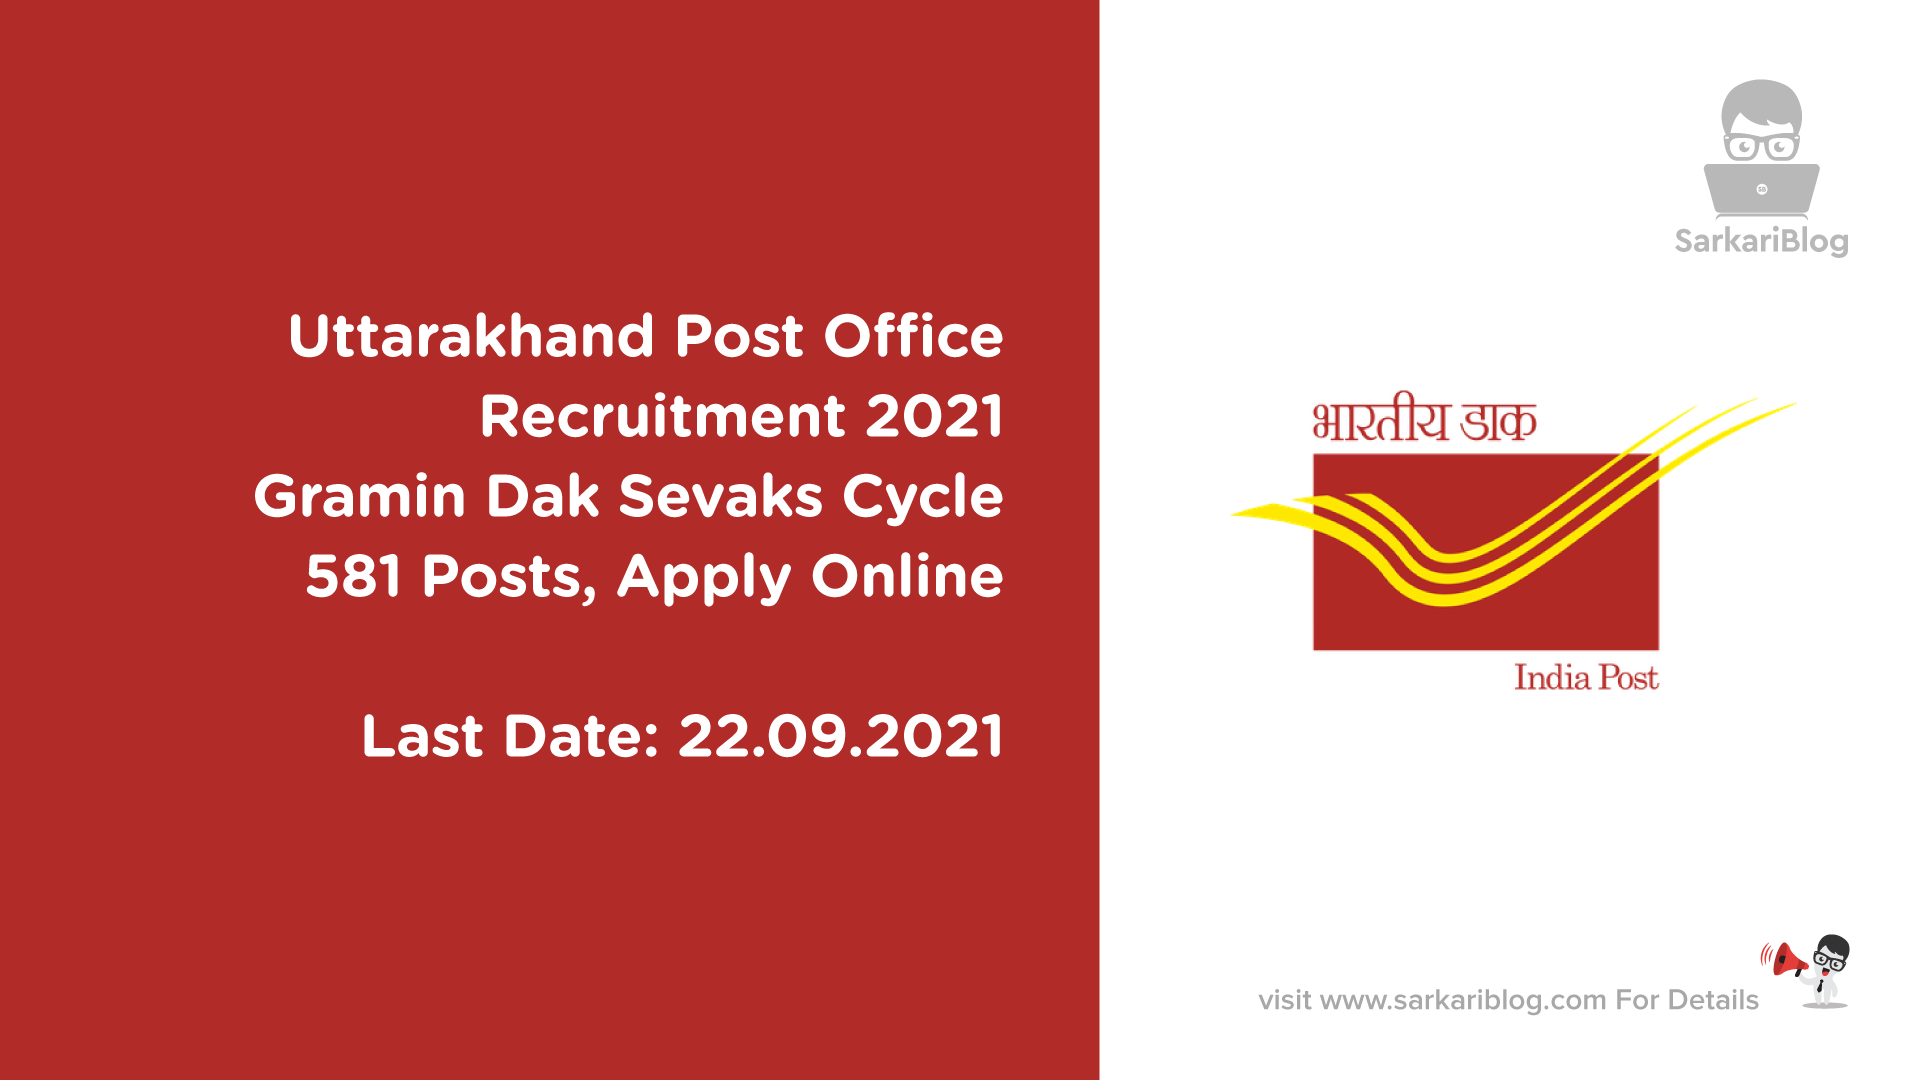 Uttarakhand Post Office Recruitment 2021, Gramin Dak Sevaks Cycle, 581 Posts, Apply Online